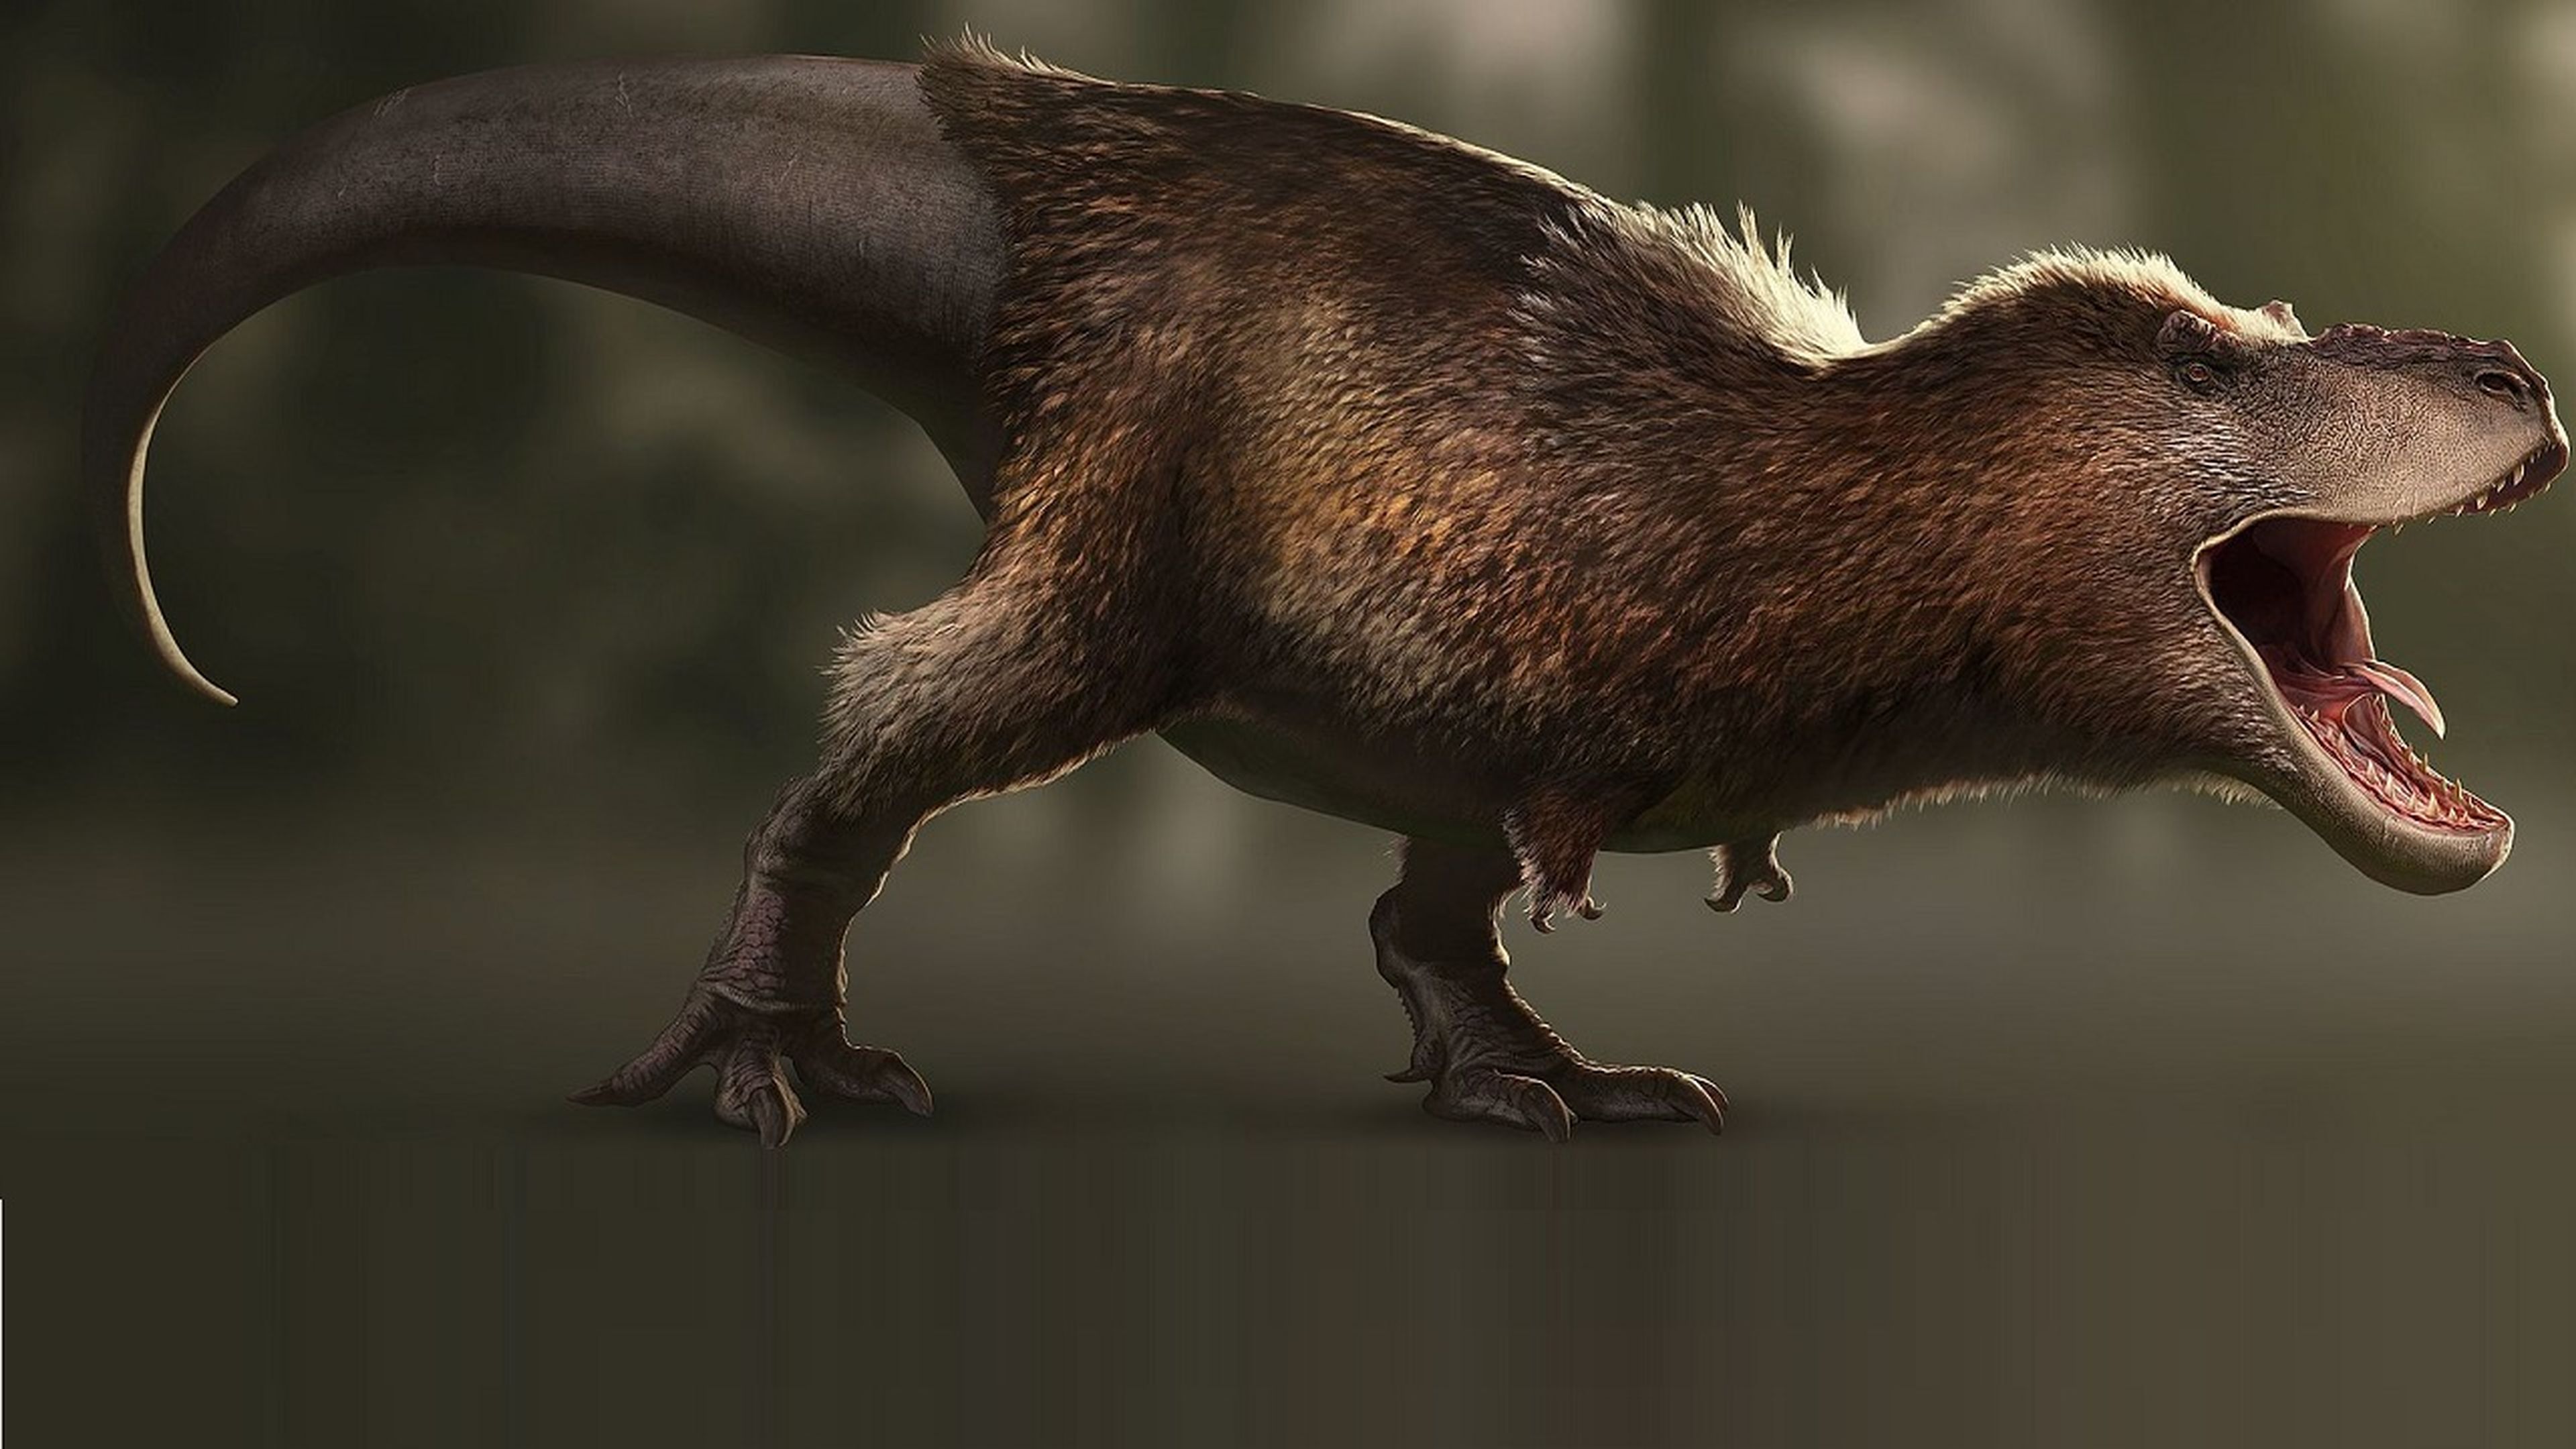 Mitos del Tyrannosaurus Rex, ¿cómo eran realmente los T-Rex? | Computer Hoy